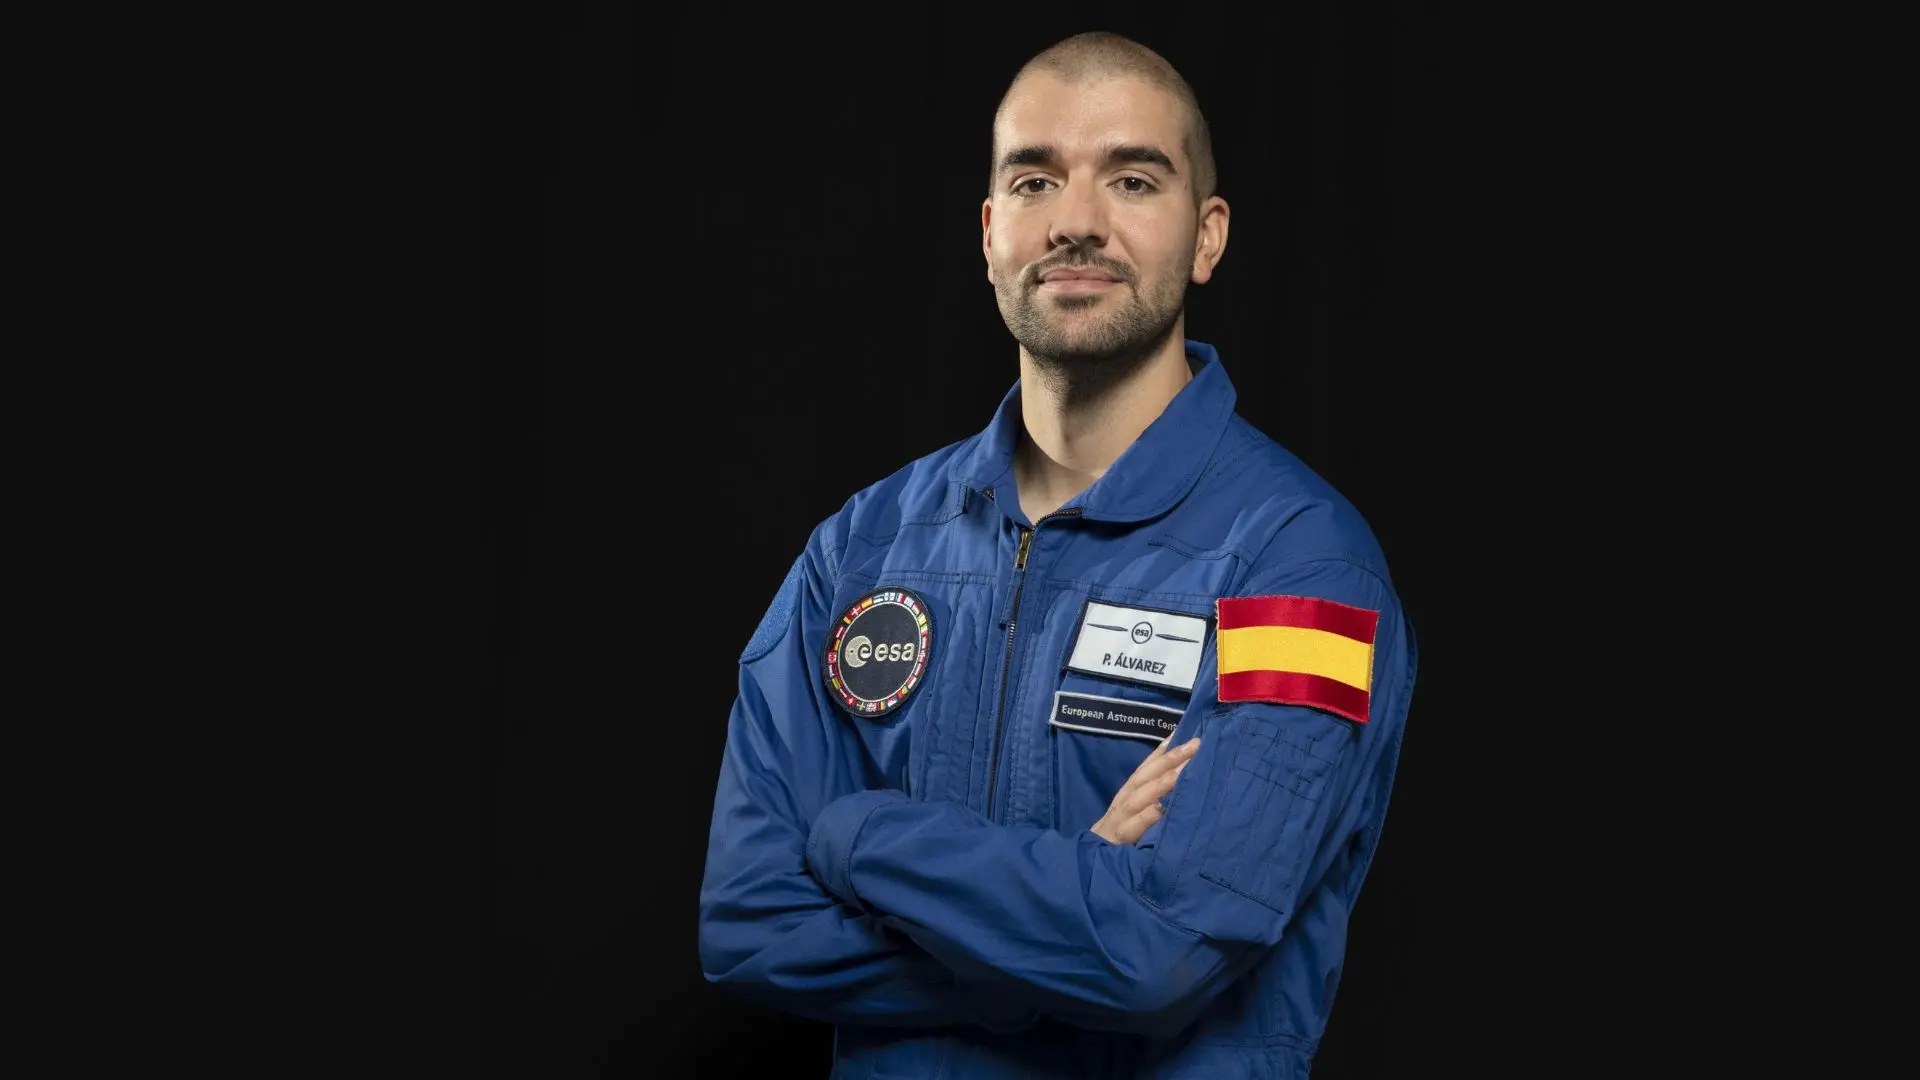 El astronauta español Pablo Álvarez se pone por primera vez su traje espacial: "Hoy ha sido un día increíble"